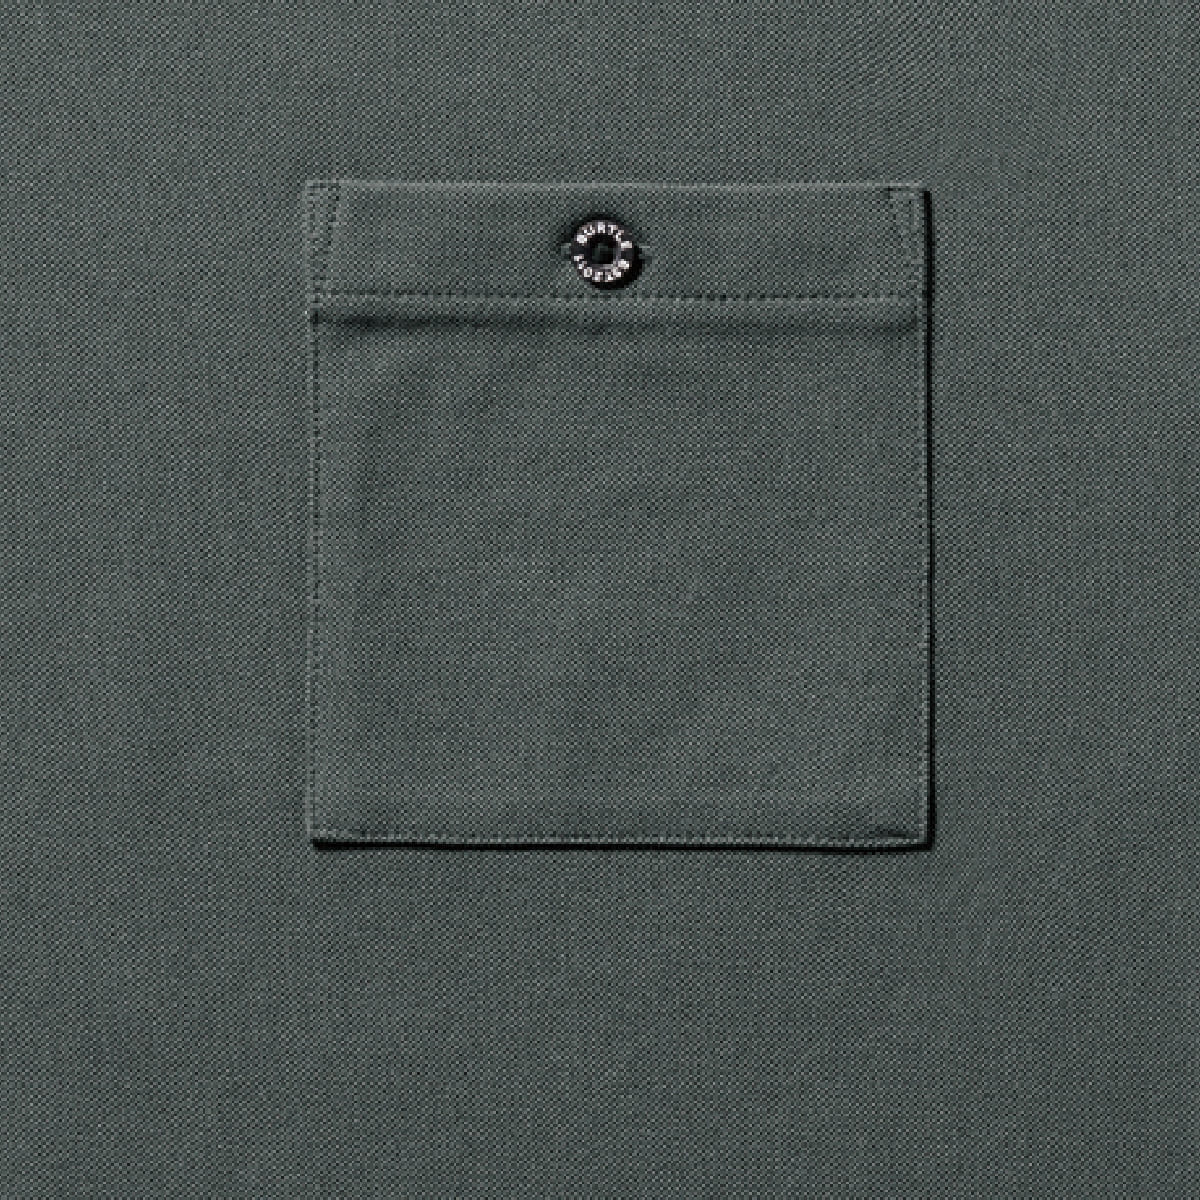 モックネックロングTシャツ(ユニセックス) | ユニフォーム | 1枚 | 655 | ブラック